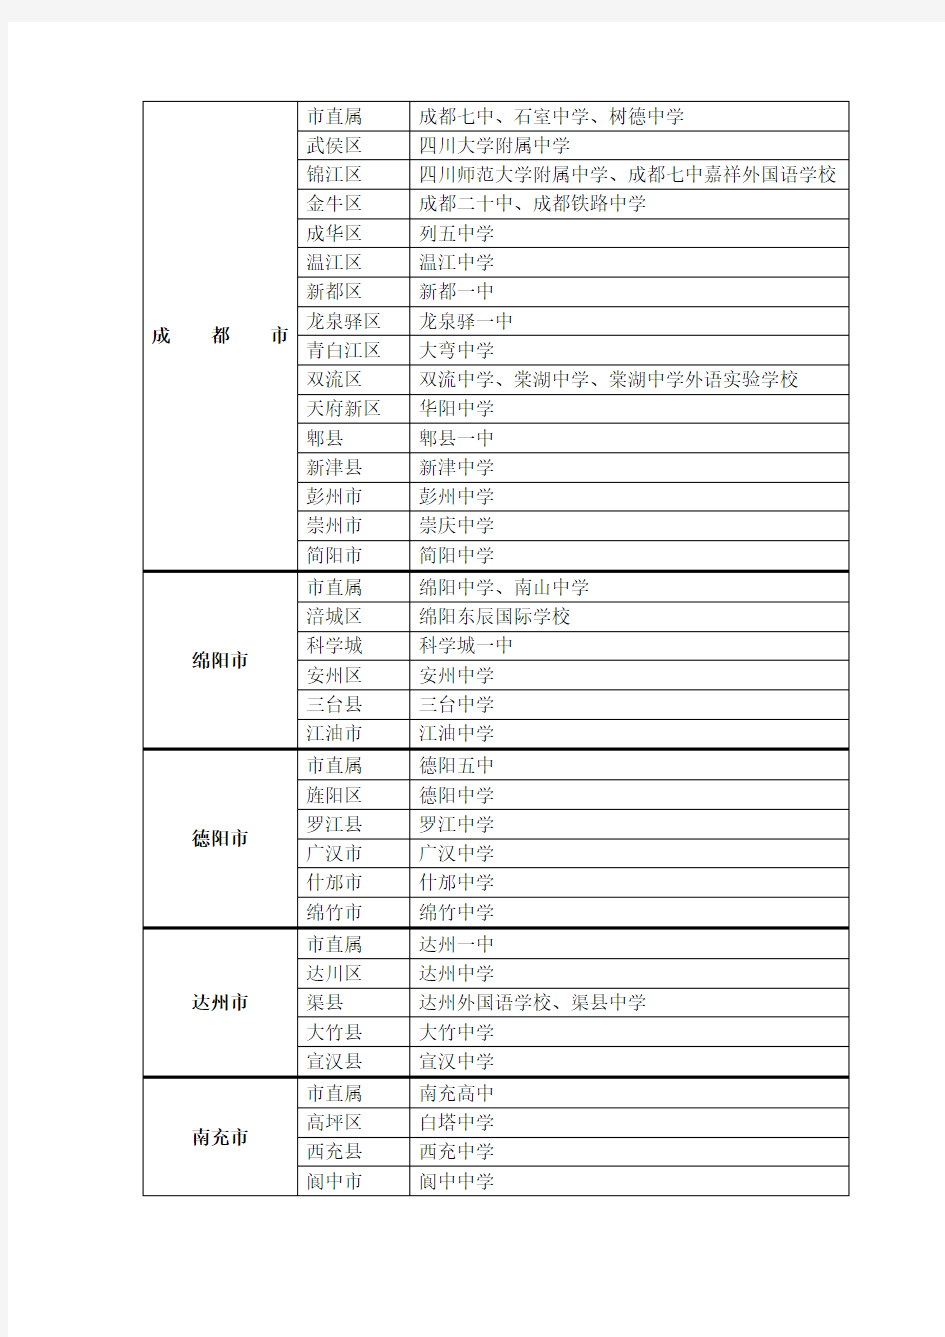 四川省一级示范性普通高中名单